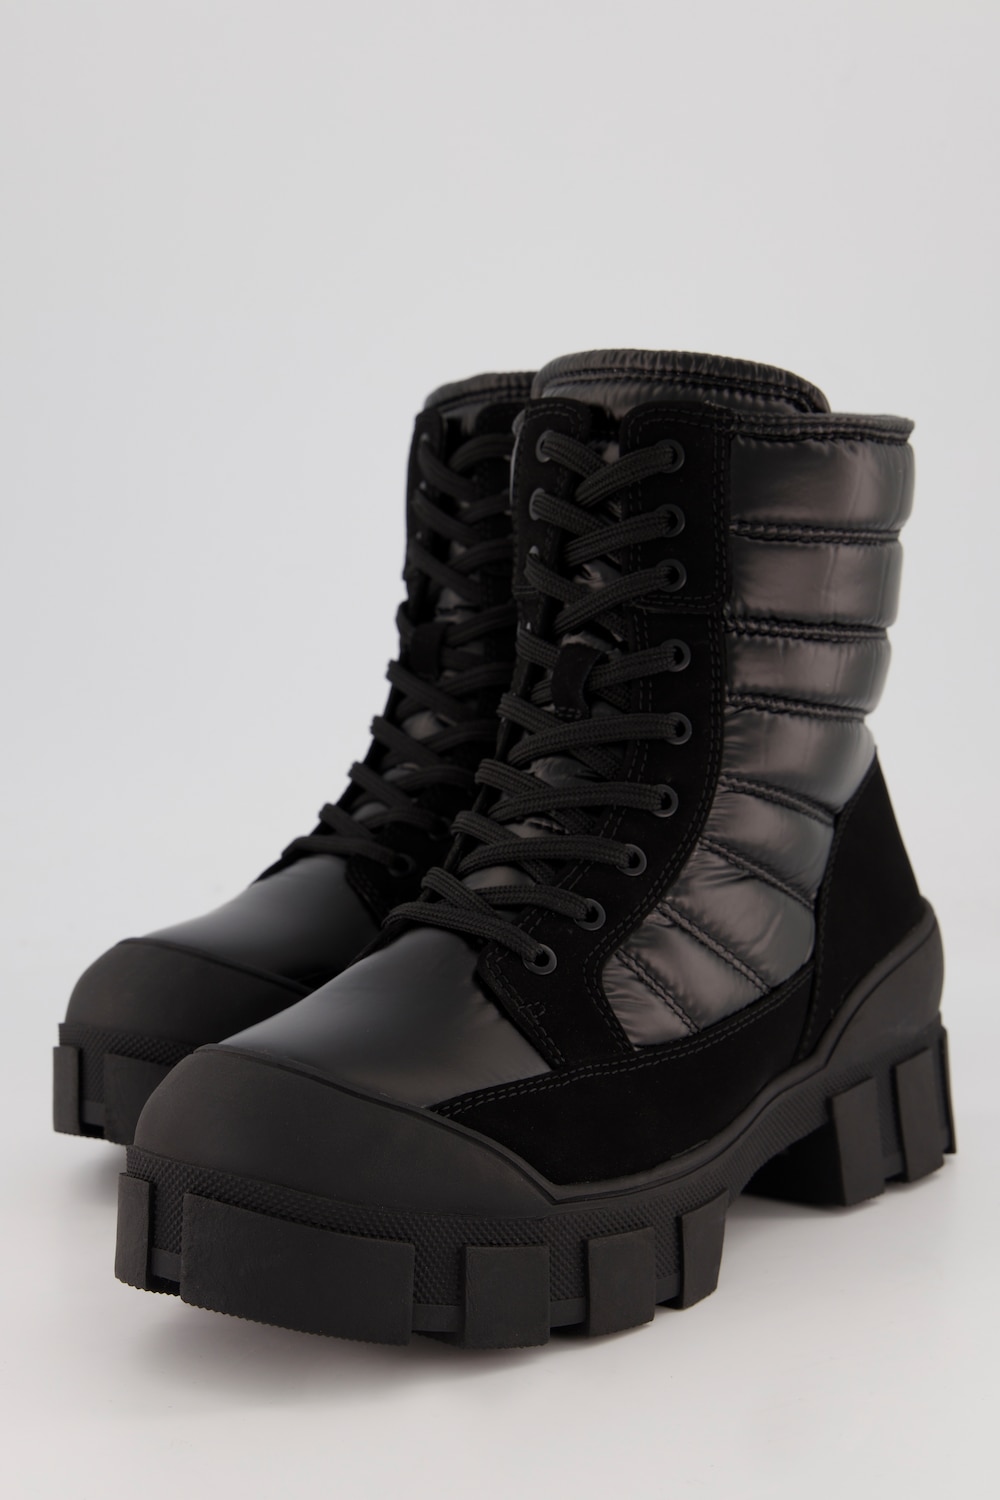 Caprice Moon-Boots, Damen, schwarz, Größe: 41, Sonstige/Synthetische Fasern, Ulla Popken von Ulla Popken